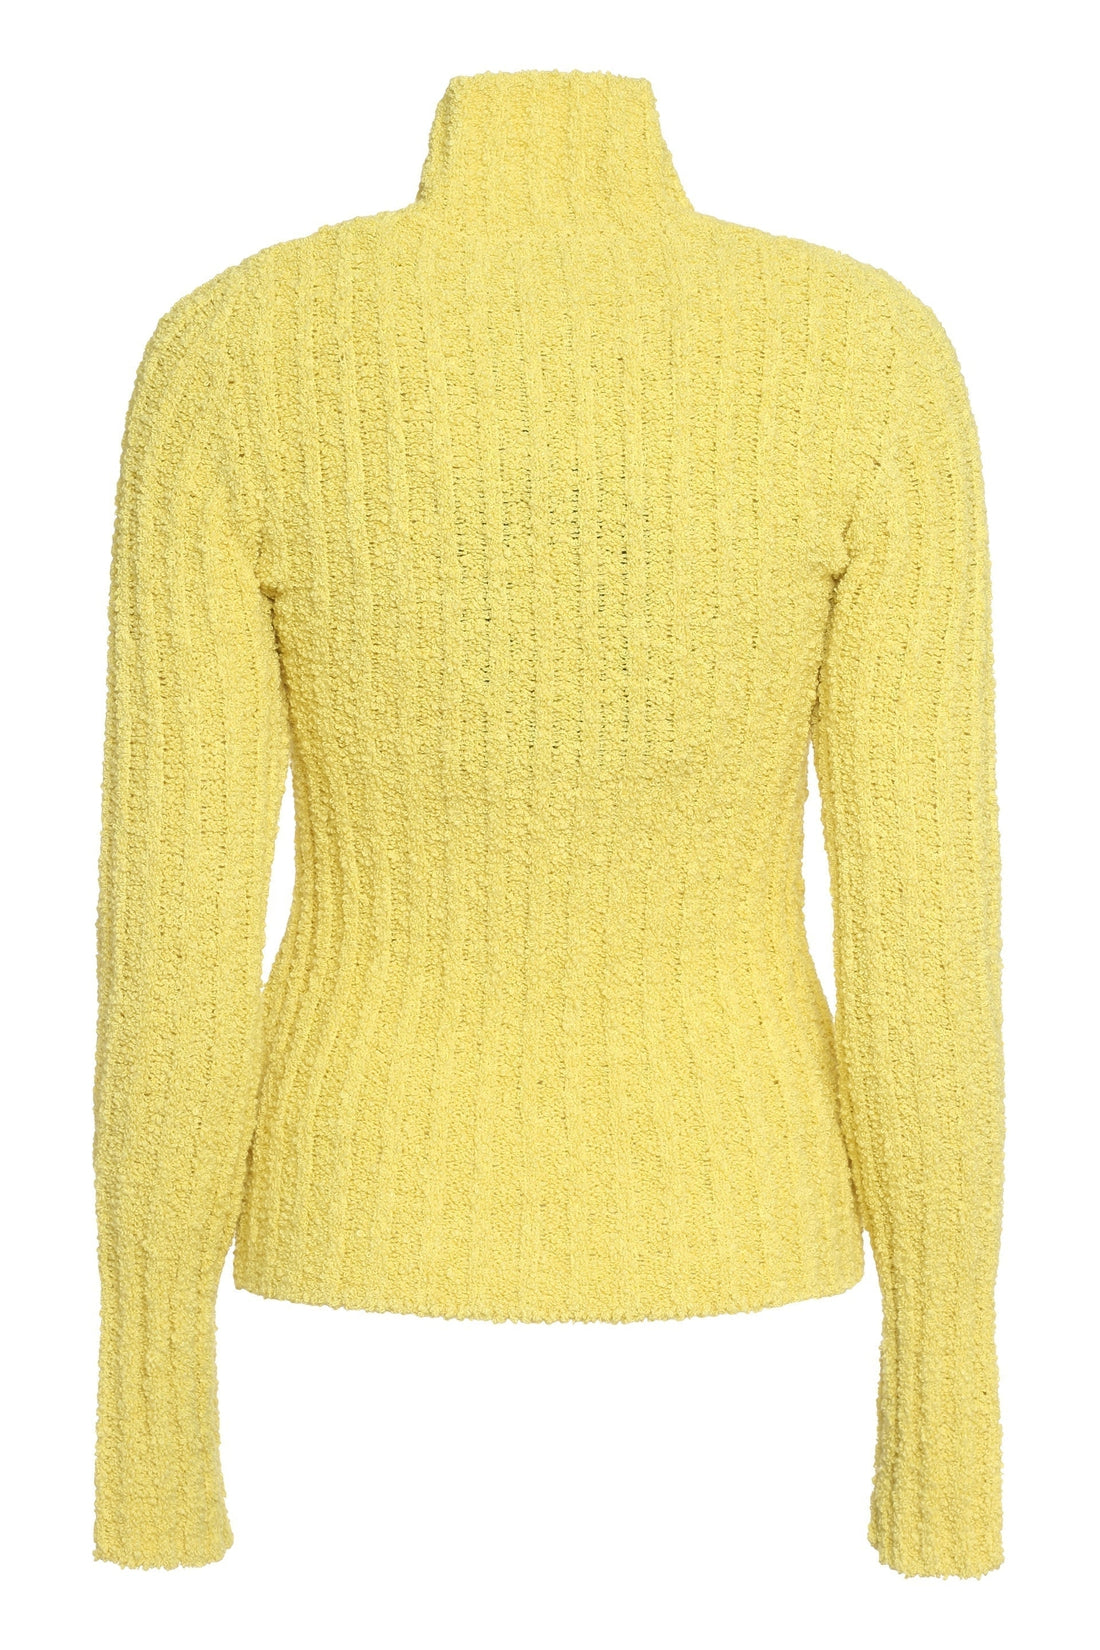 Moncler Genius-OUTLET-SALE-1 Moncler JW Anderson - Tricot knit turtleneck pullover-ARCHIVIST